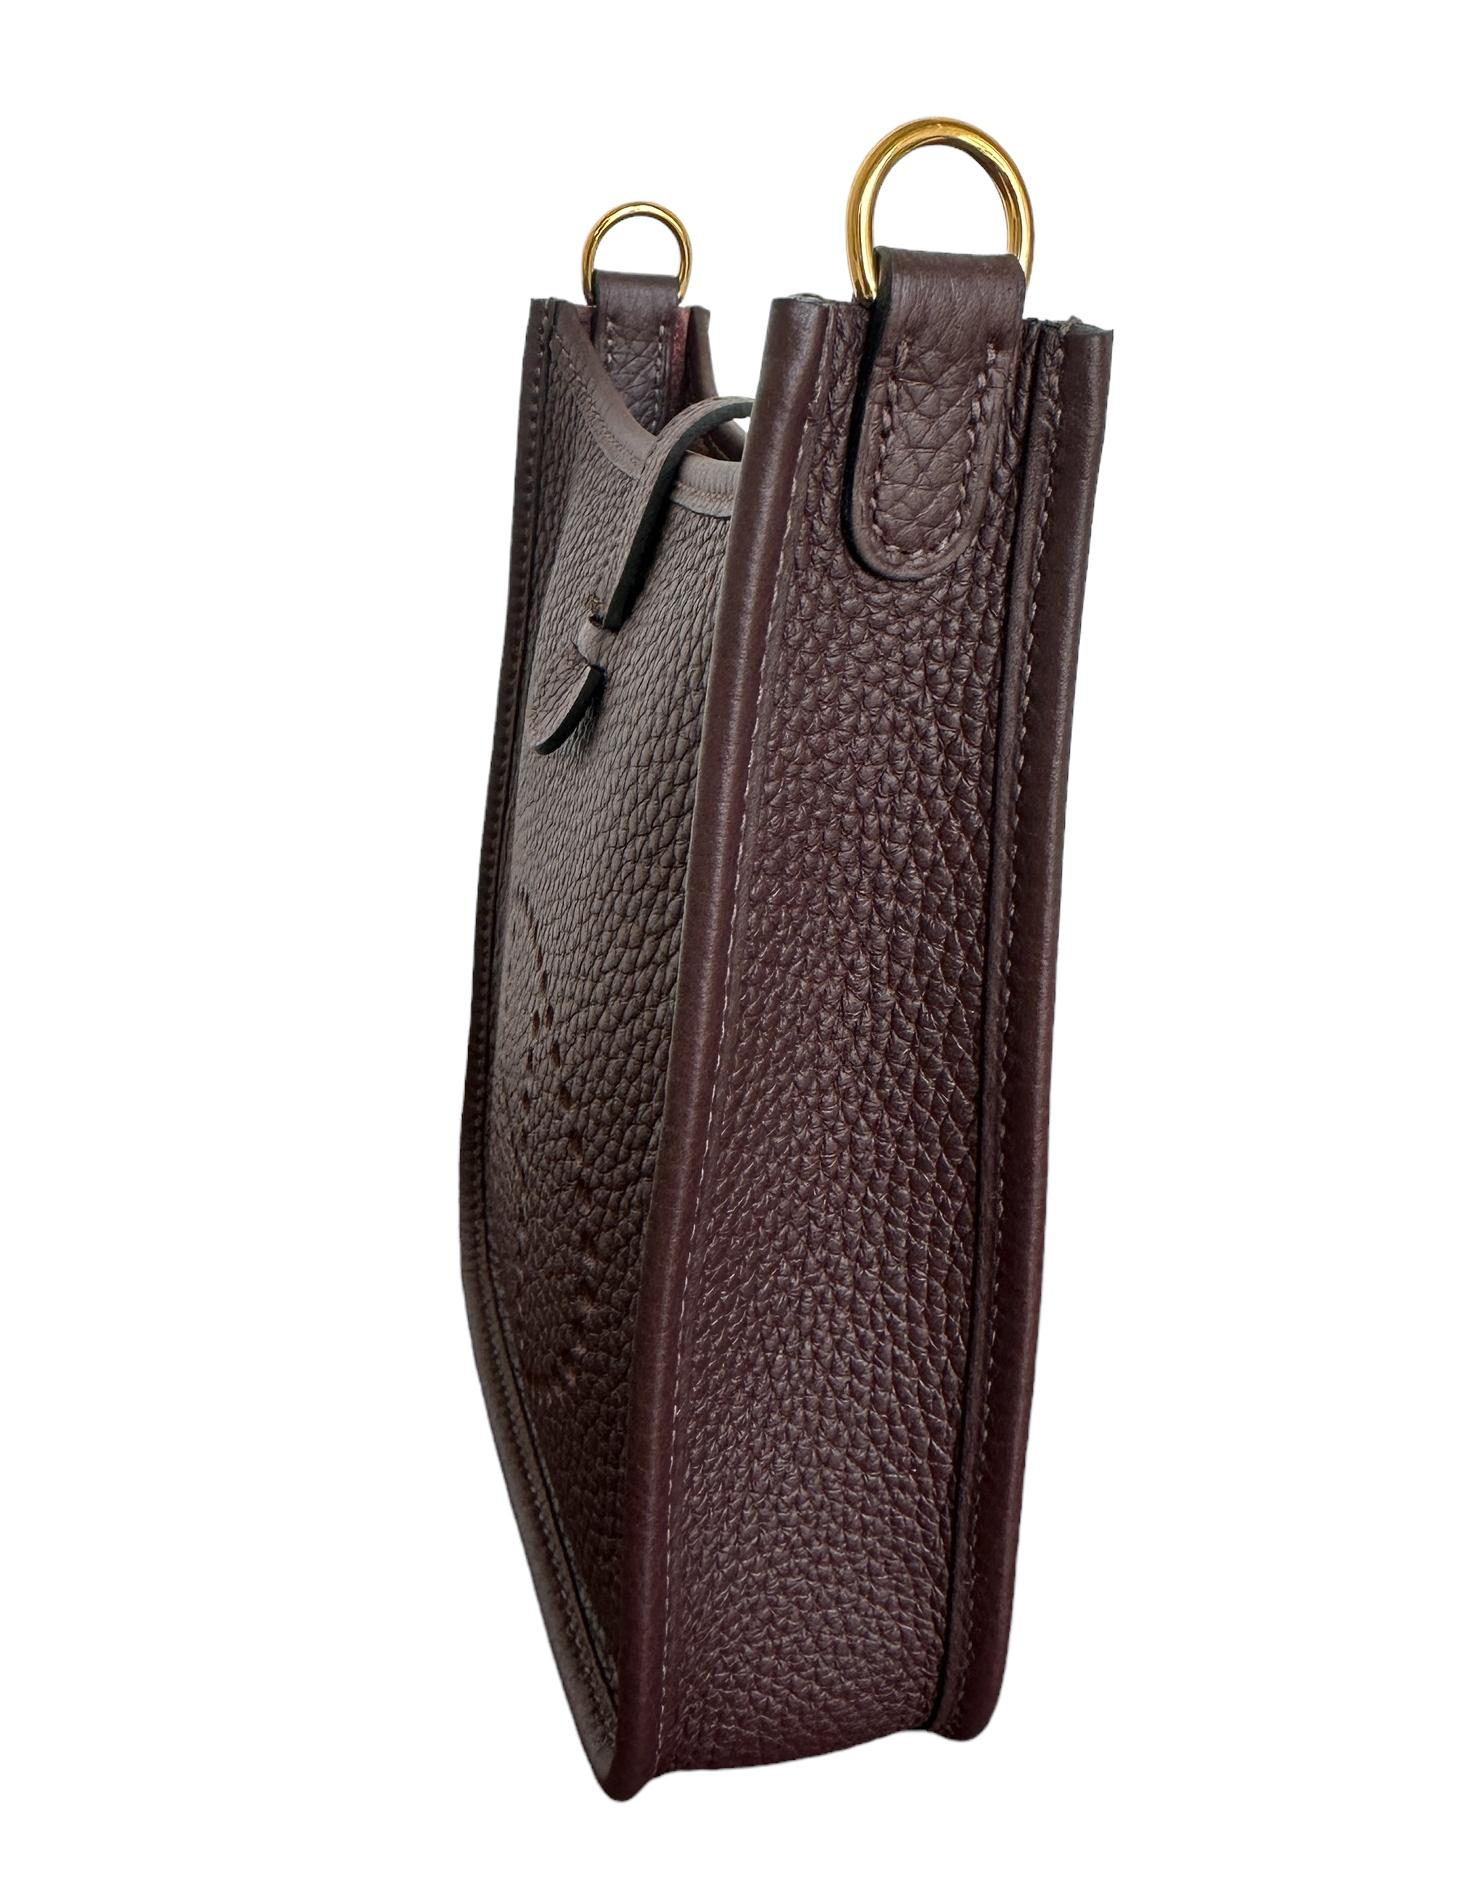 Hermès Evelyne 16 TPM Rouge Sellier Bag Gold Hardware Limited Edition Strap 3